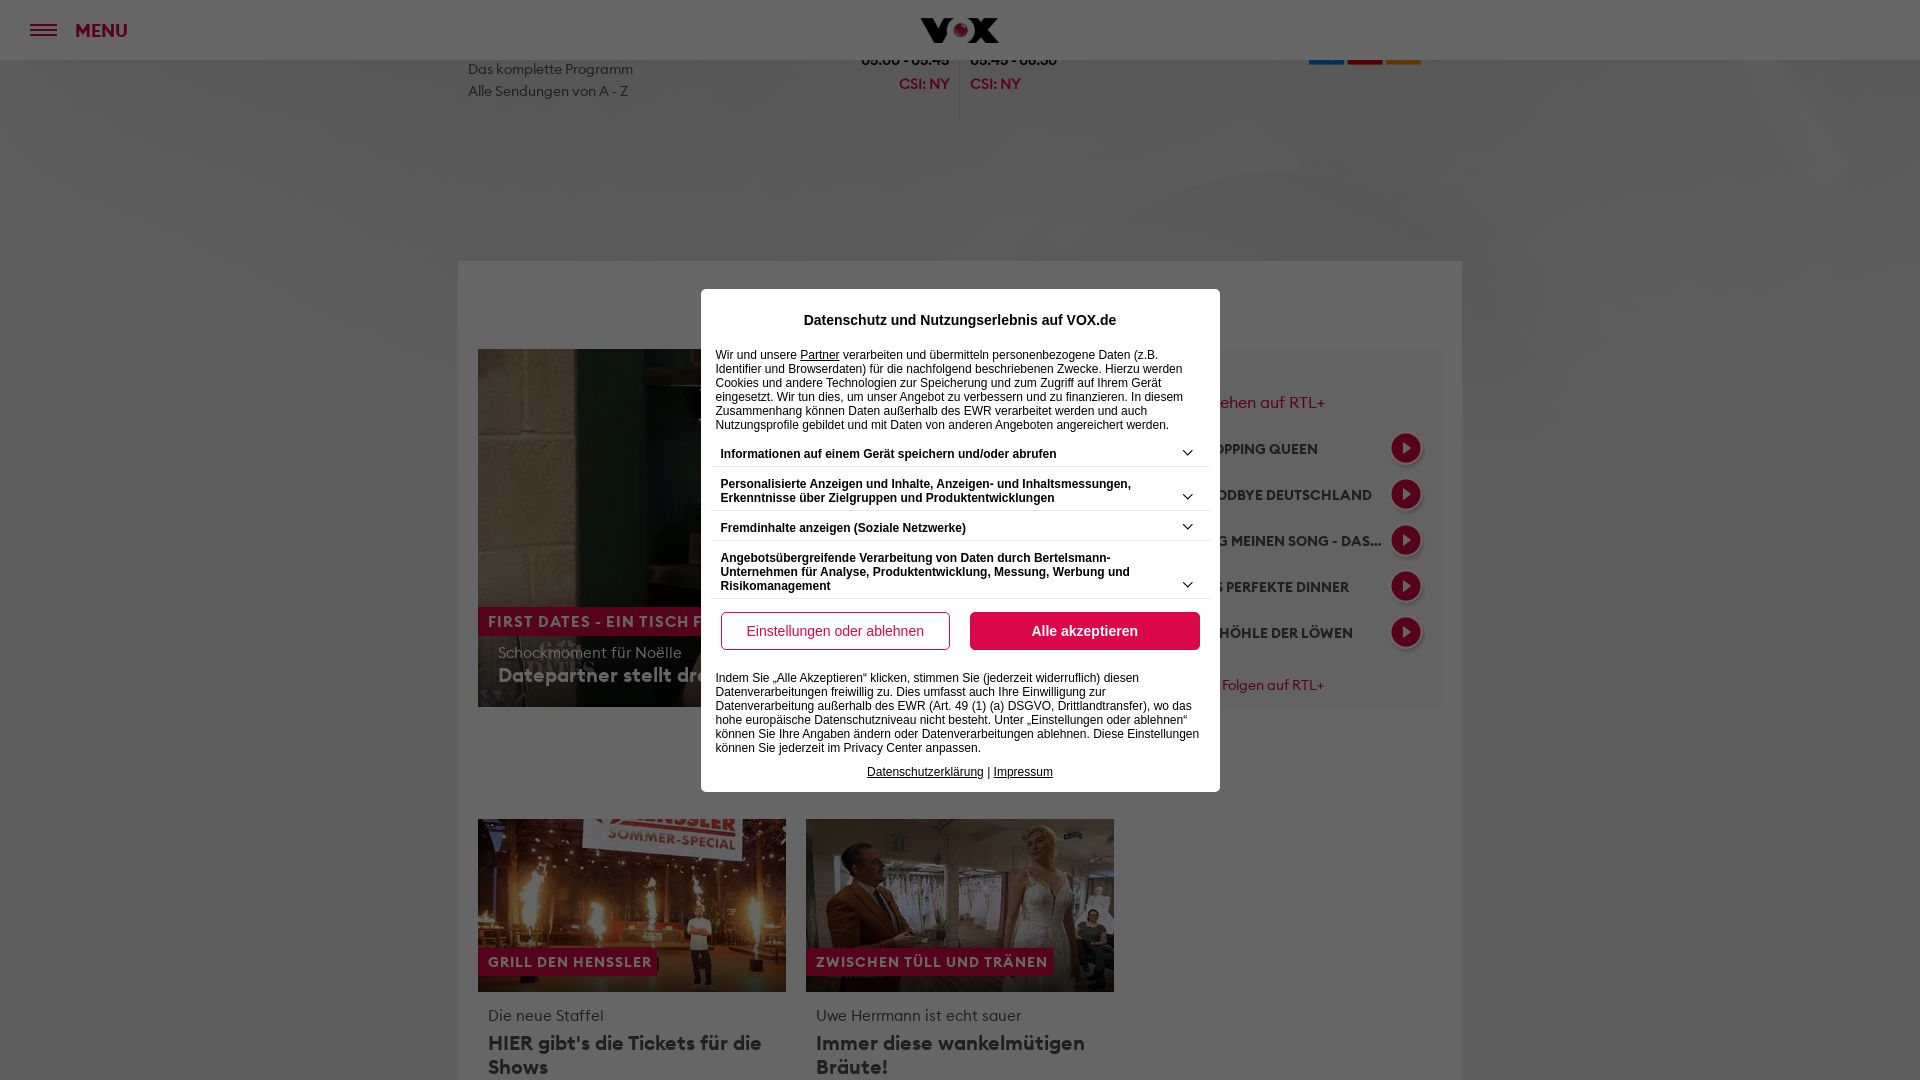 Stato del sito web vox.de è   ONLINE